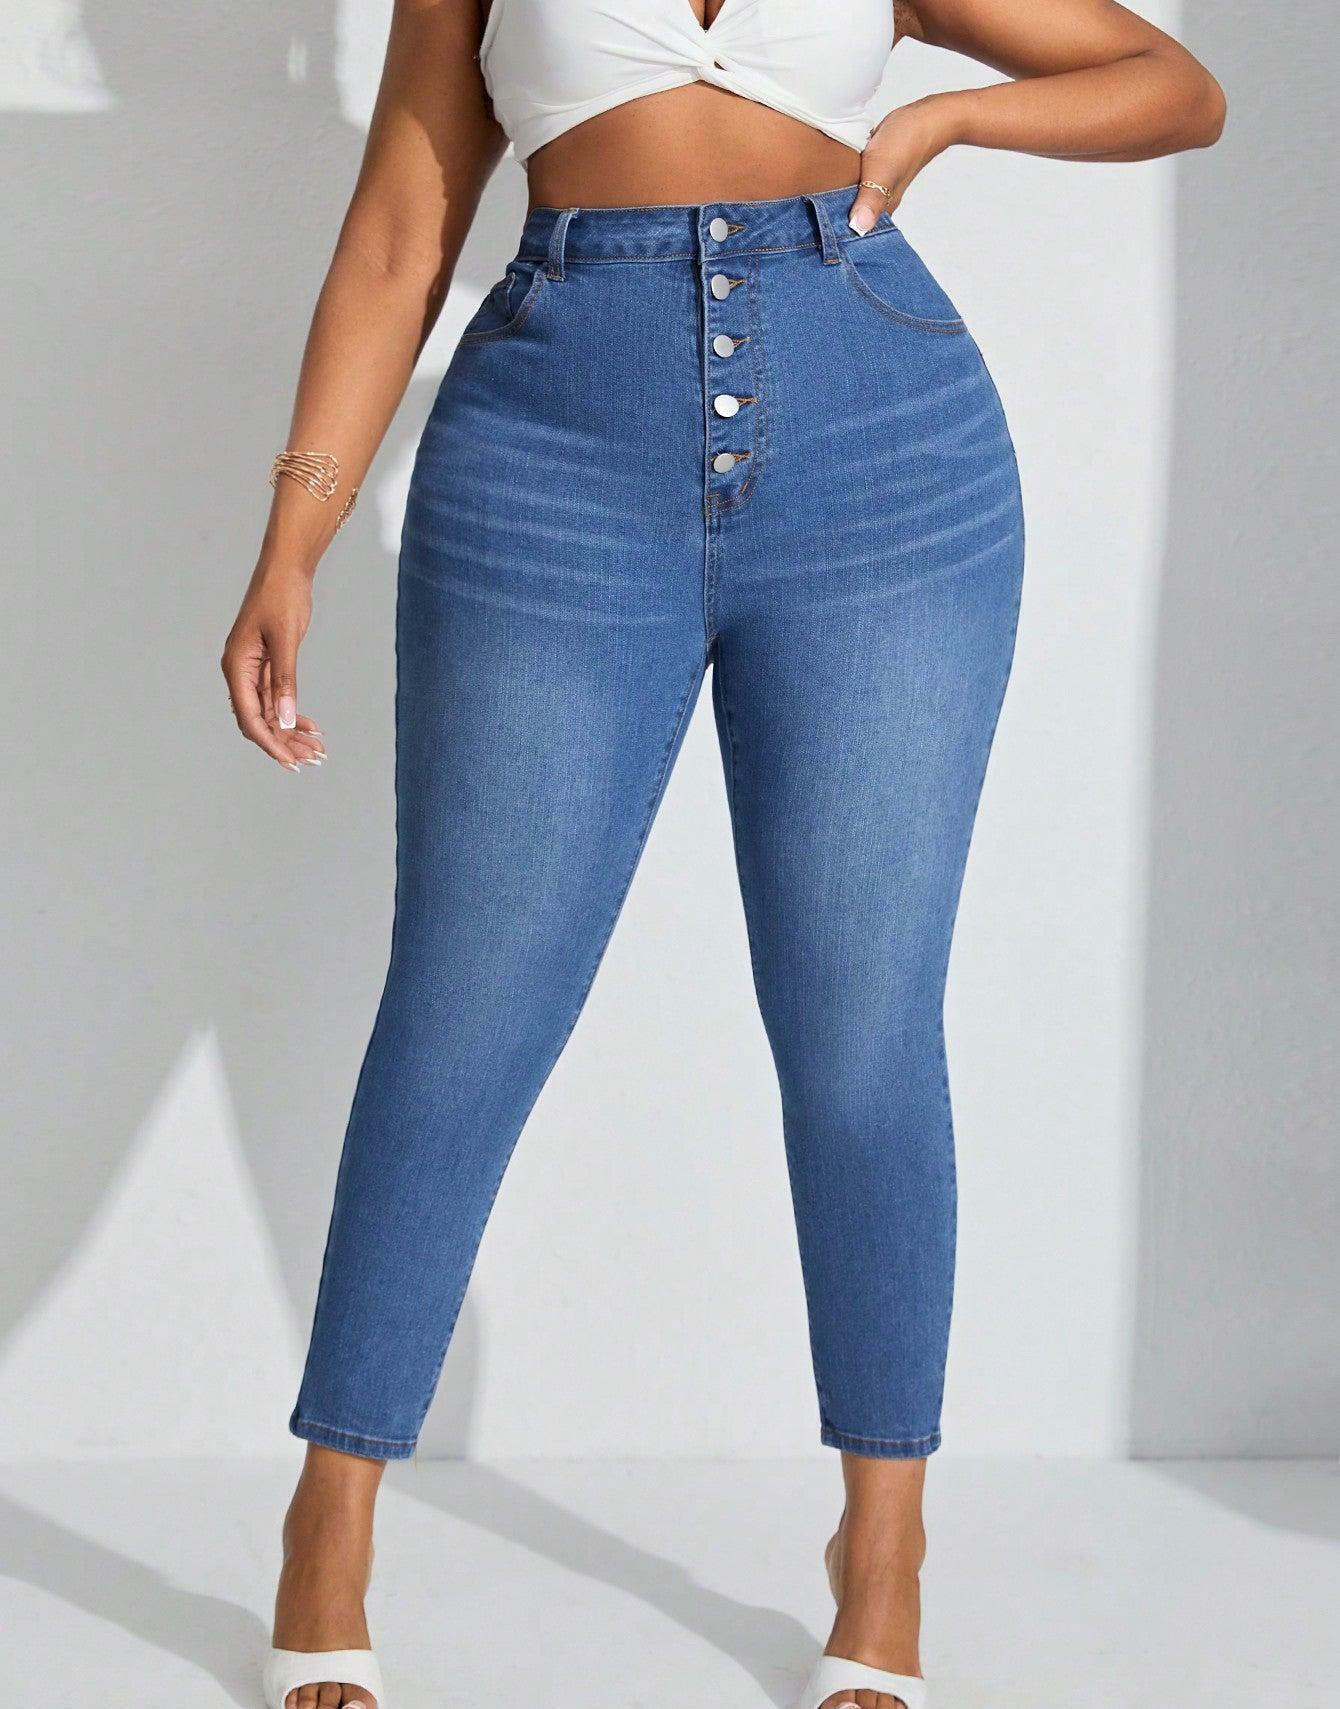 spodnie rurki jeans wysoki stan guziki